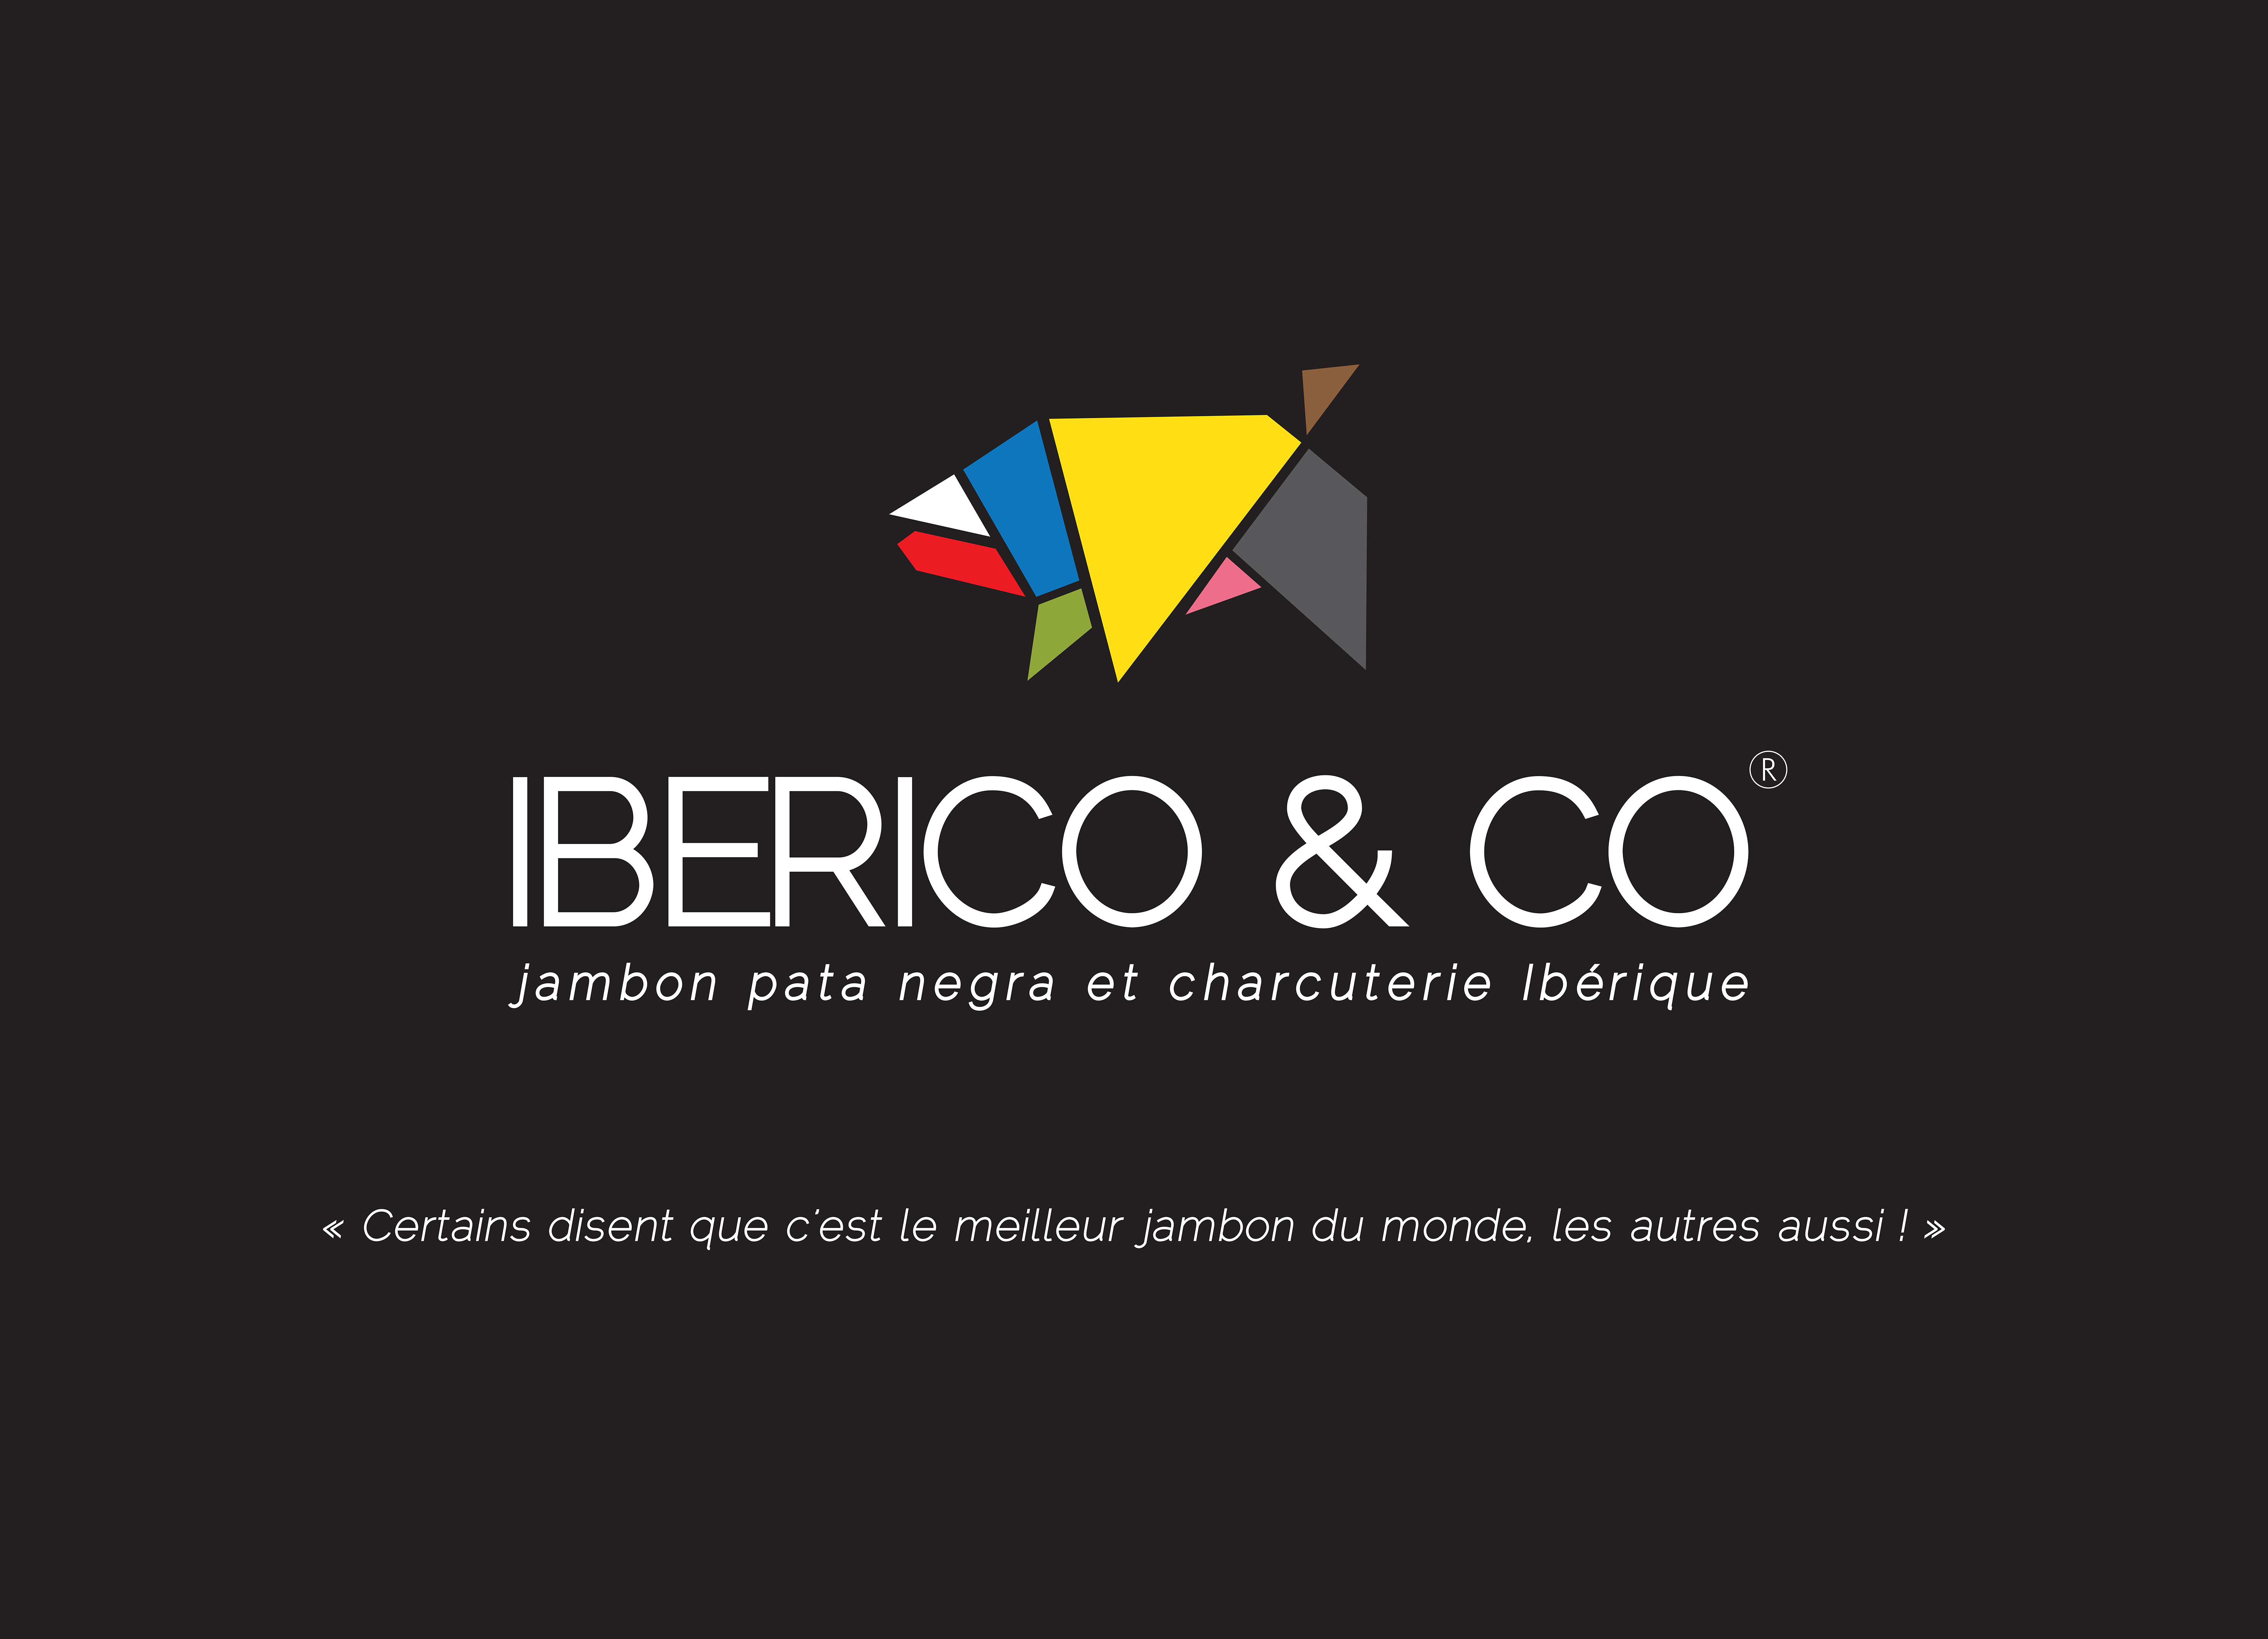 1- BGC, Iberico & co, panneau entrée, 2200-1400 mm